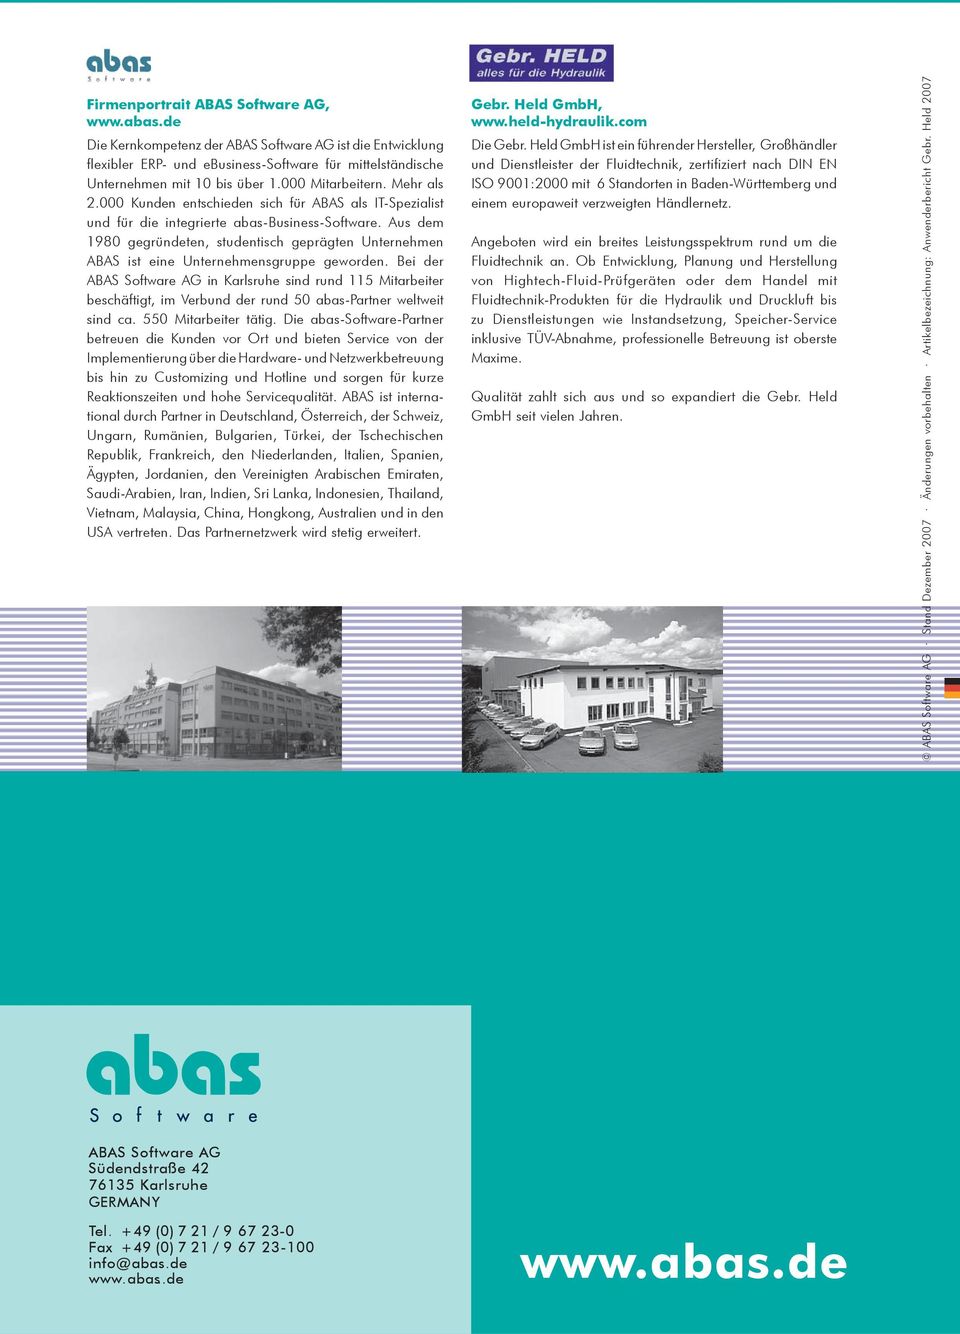 Aus dem 1980 gegründeten, studentisch geprägten Unternehmen ABAS ist eine Unternehmensgruppe geworden.